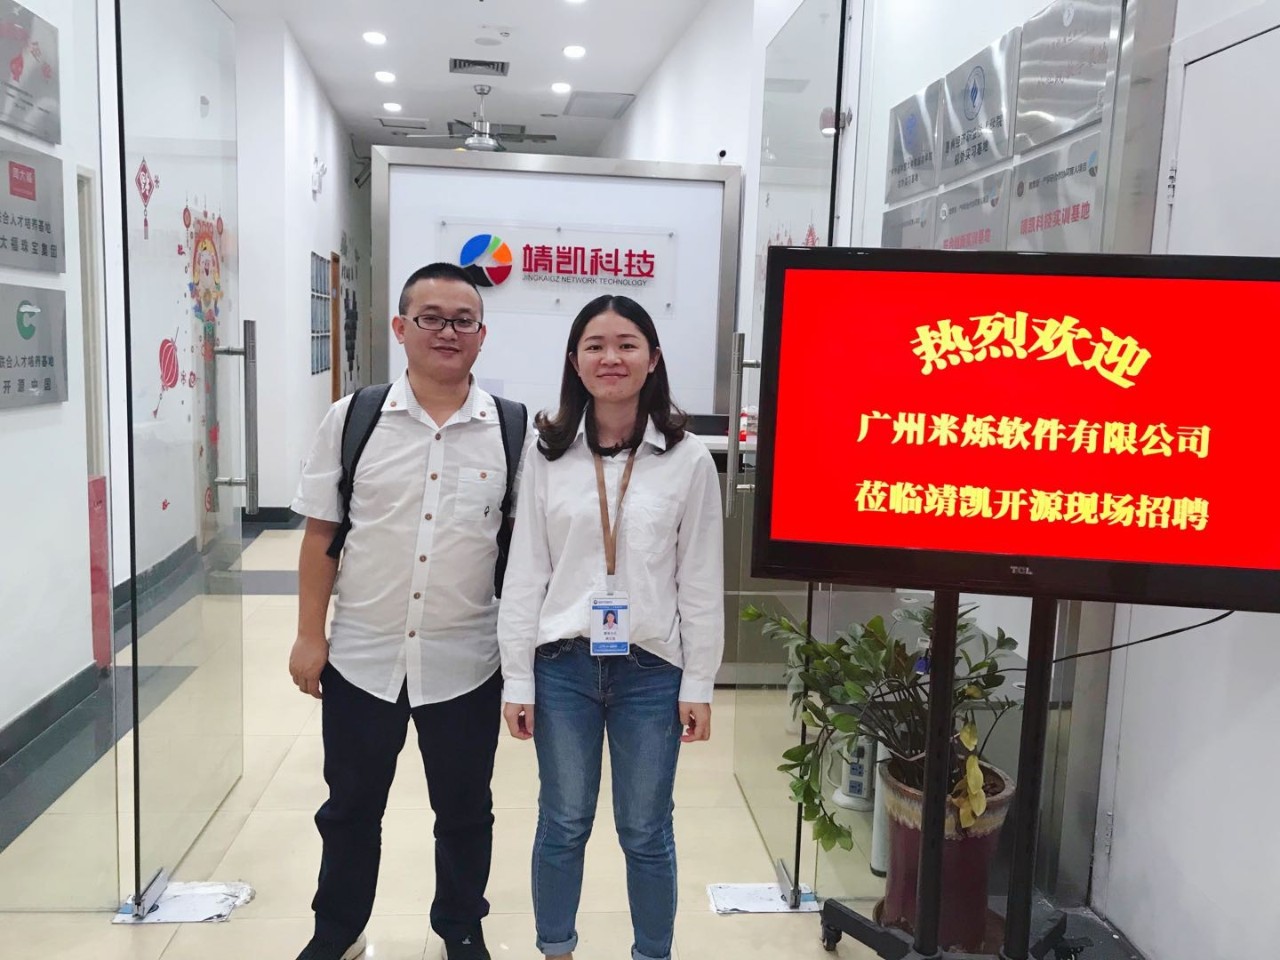 广州米烁软件有限公司莅临靖凯开源现场招聘